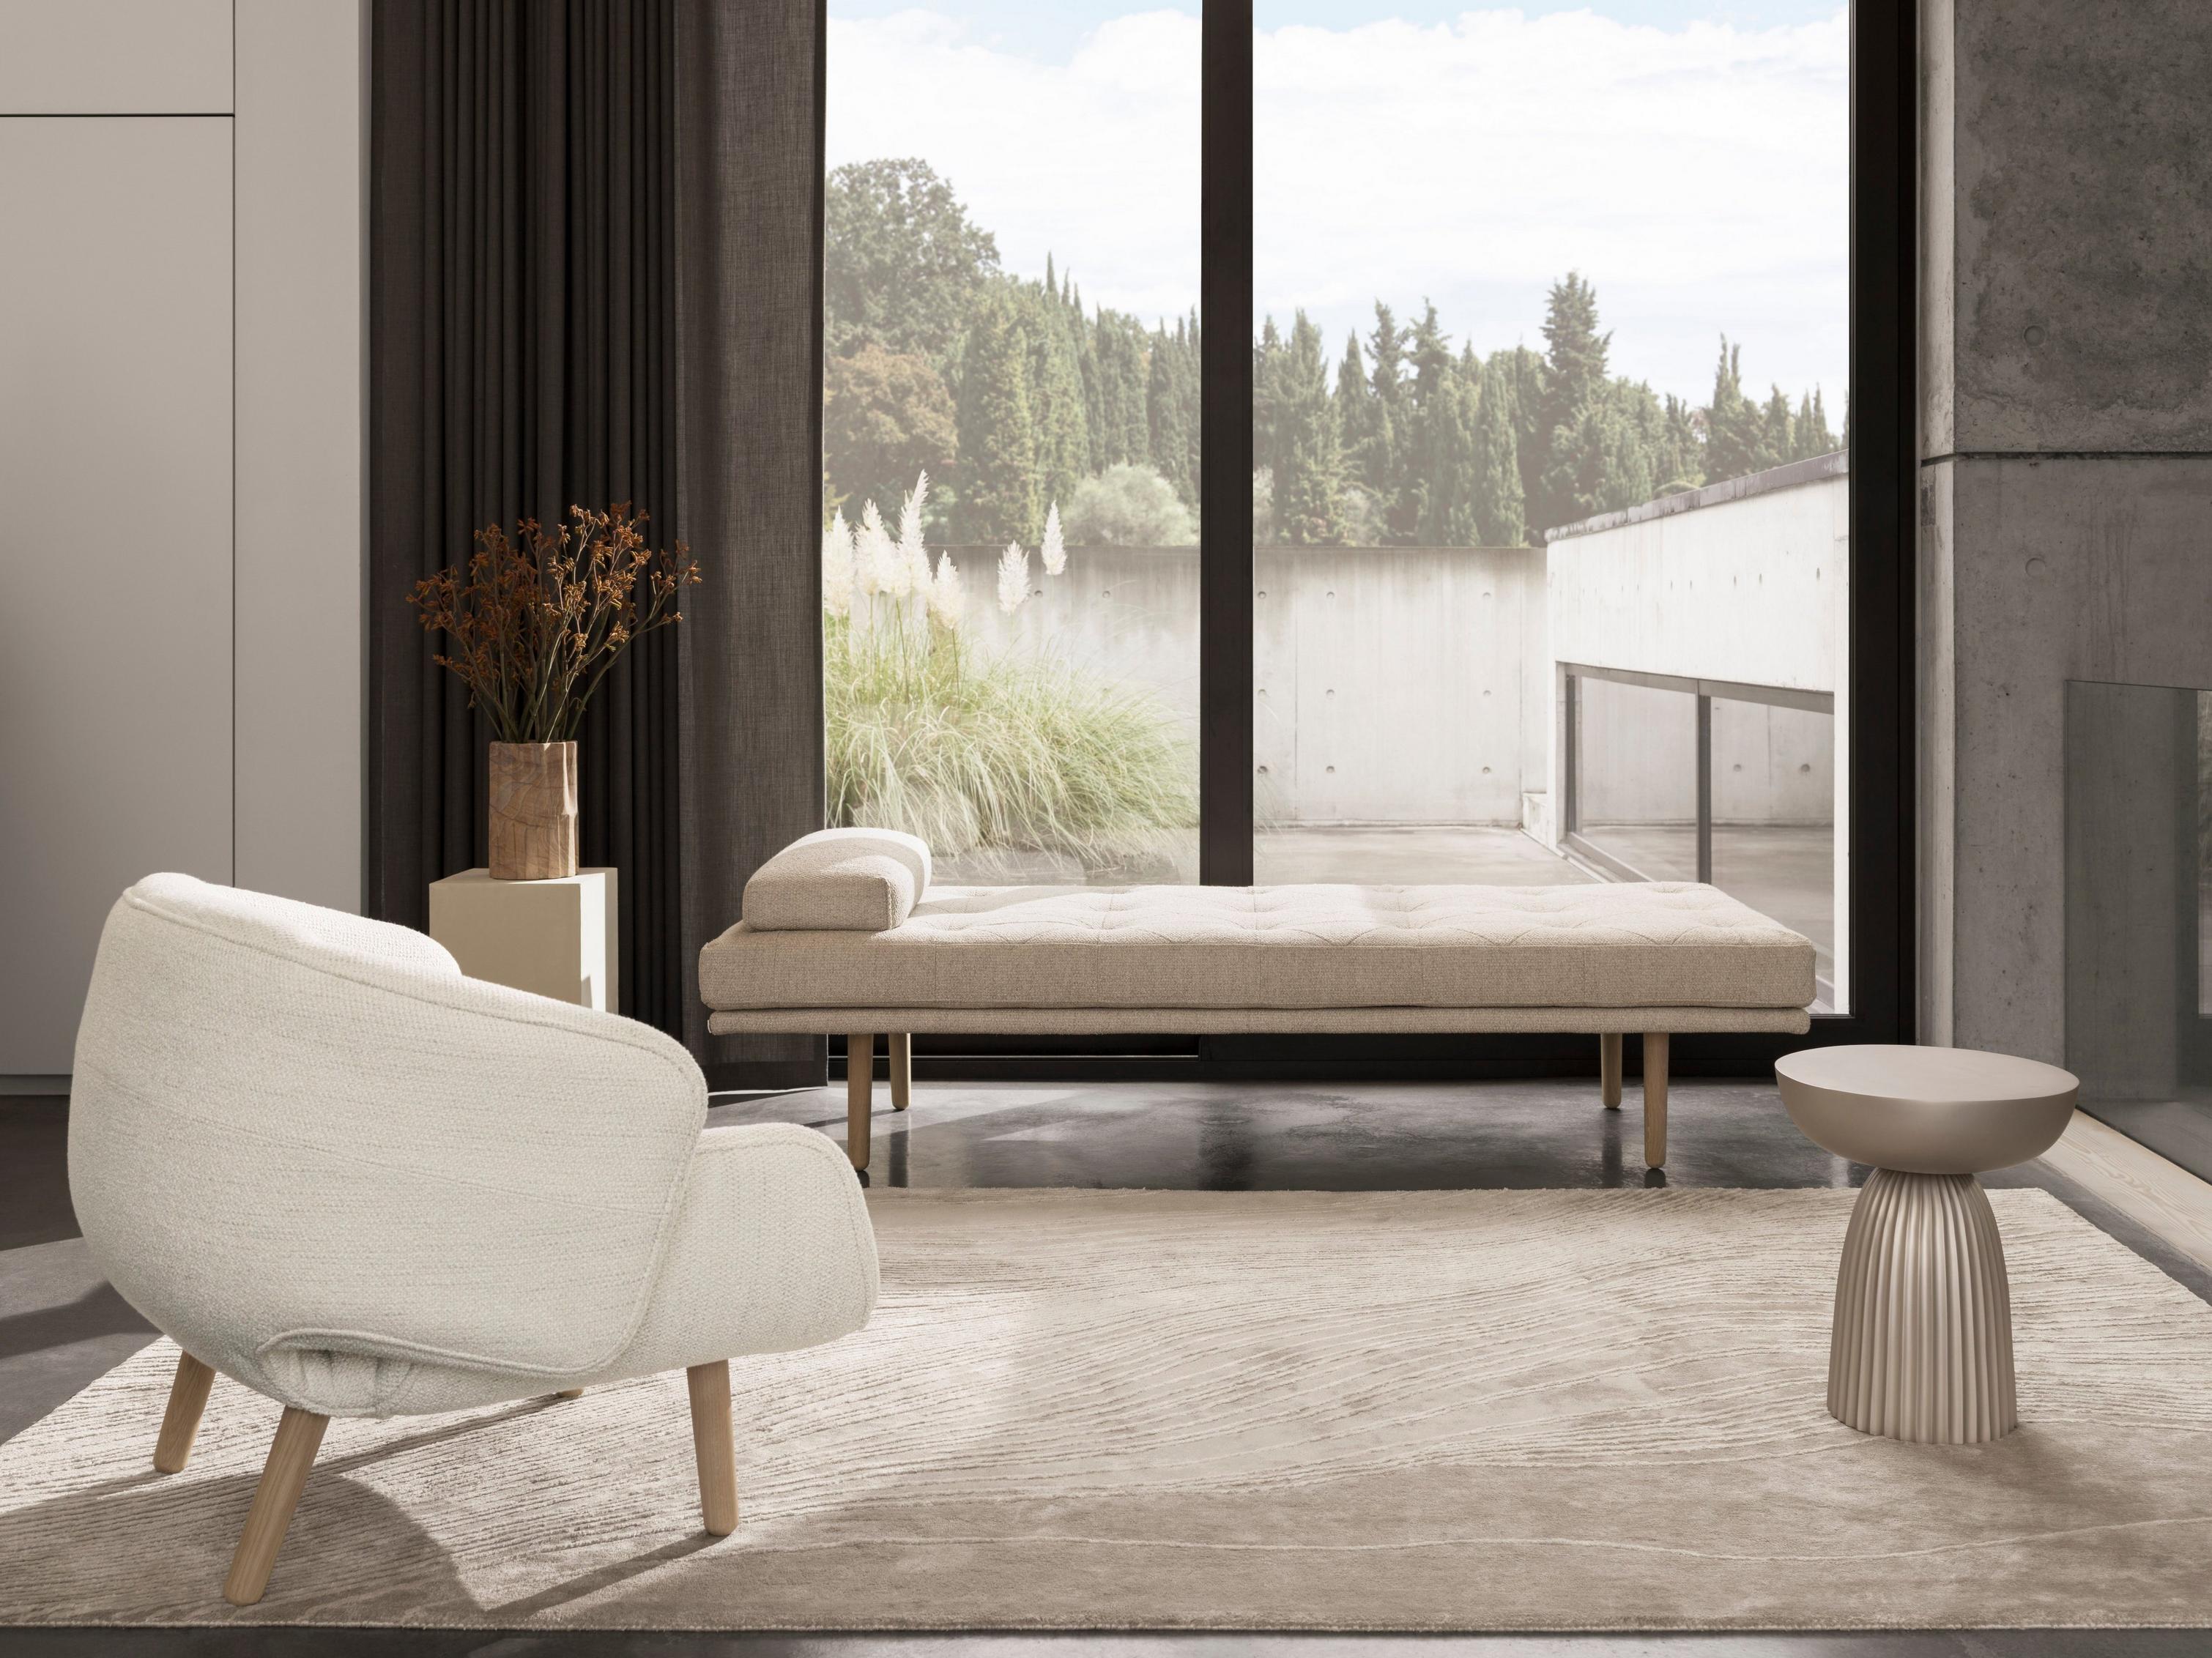 米色 Lazio 面料 Fusion 沙发床打造简约起居空间。